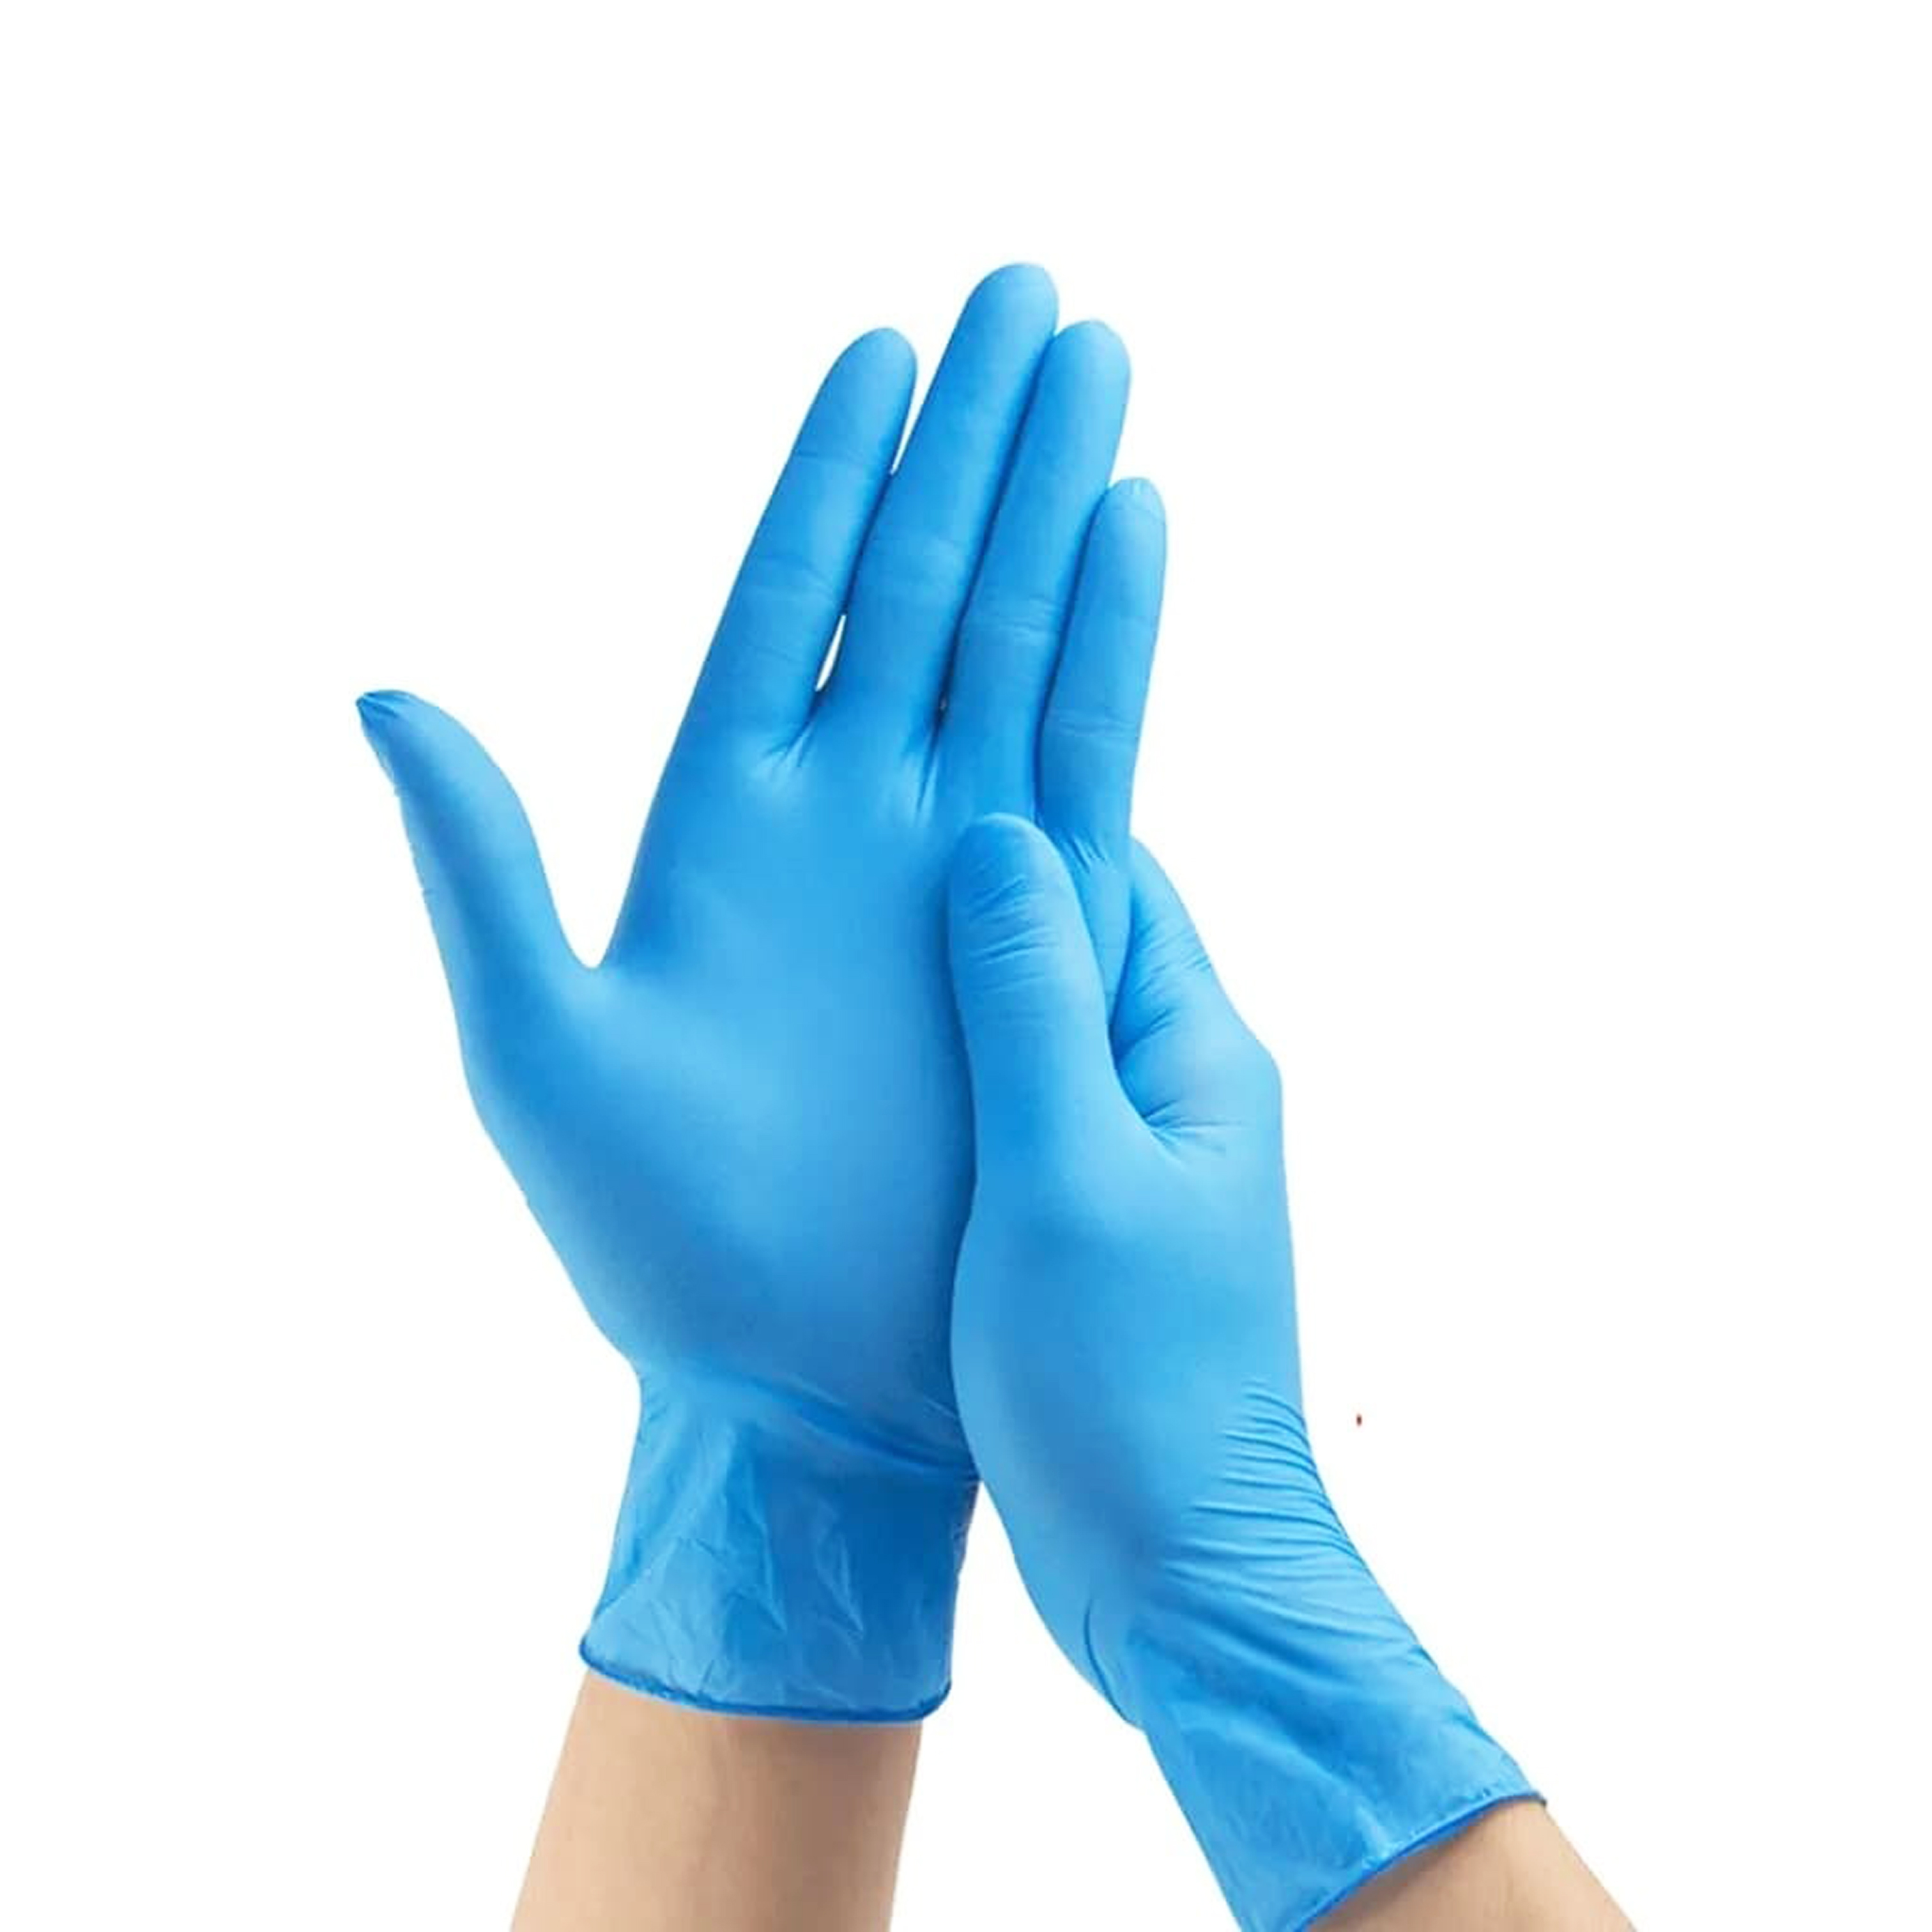 Перчатки нитровиниловые голубые размер S 100шт ALPHA